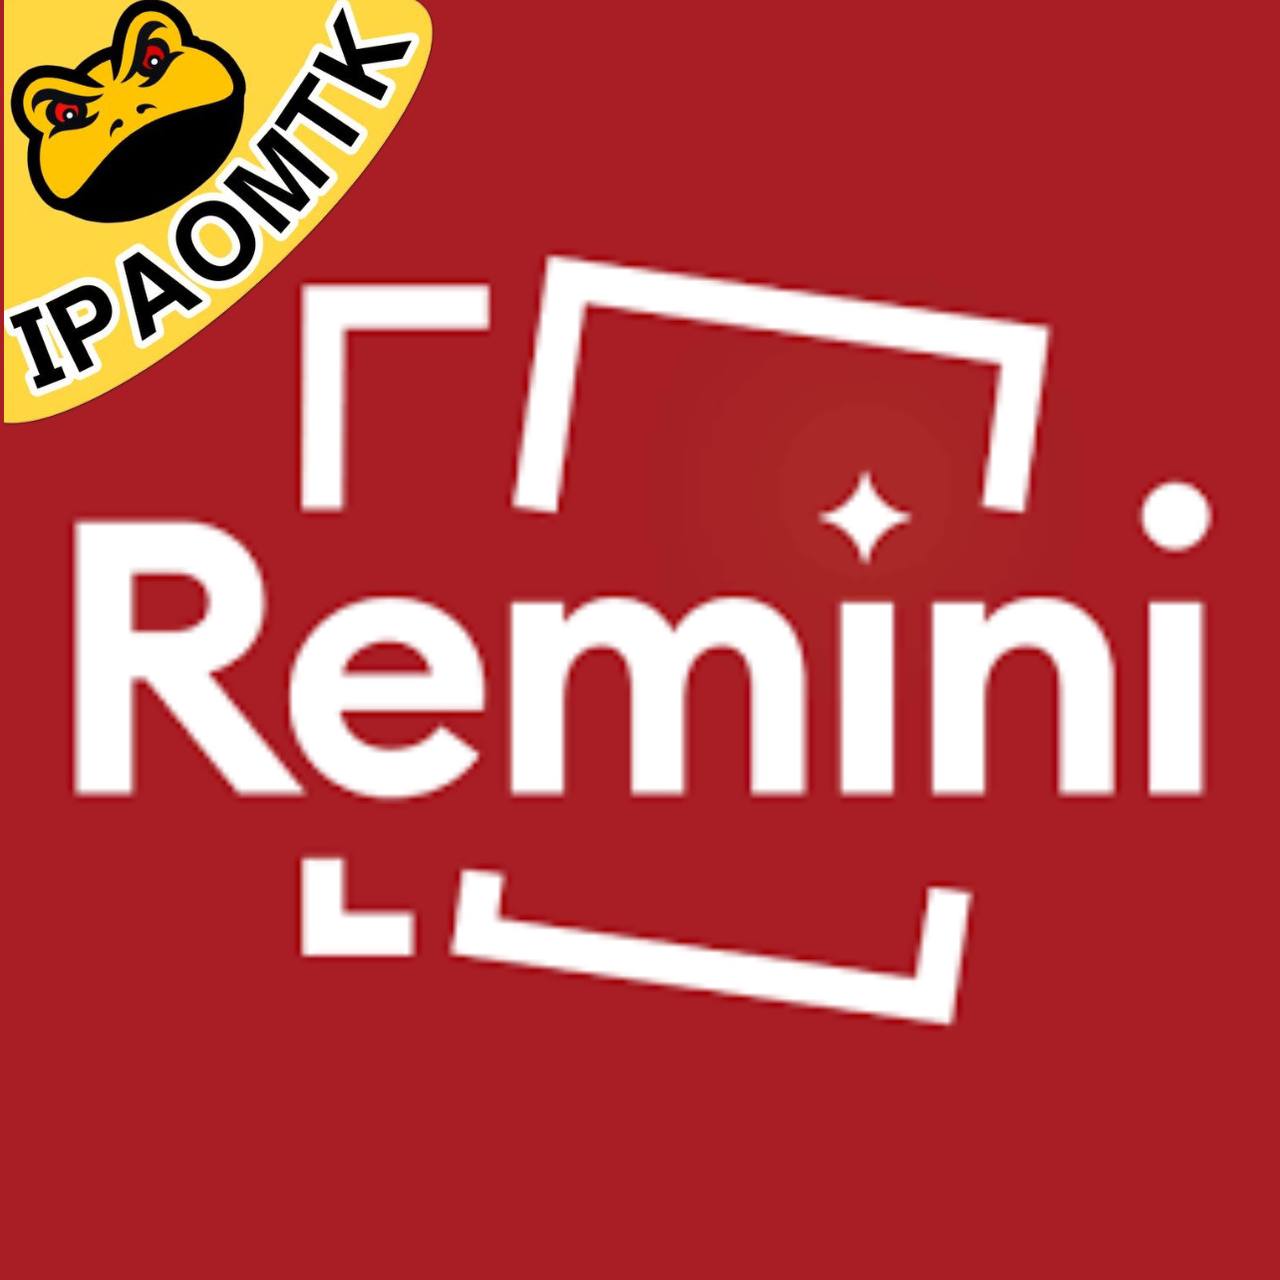 Remini IPA